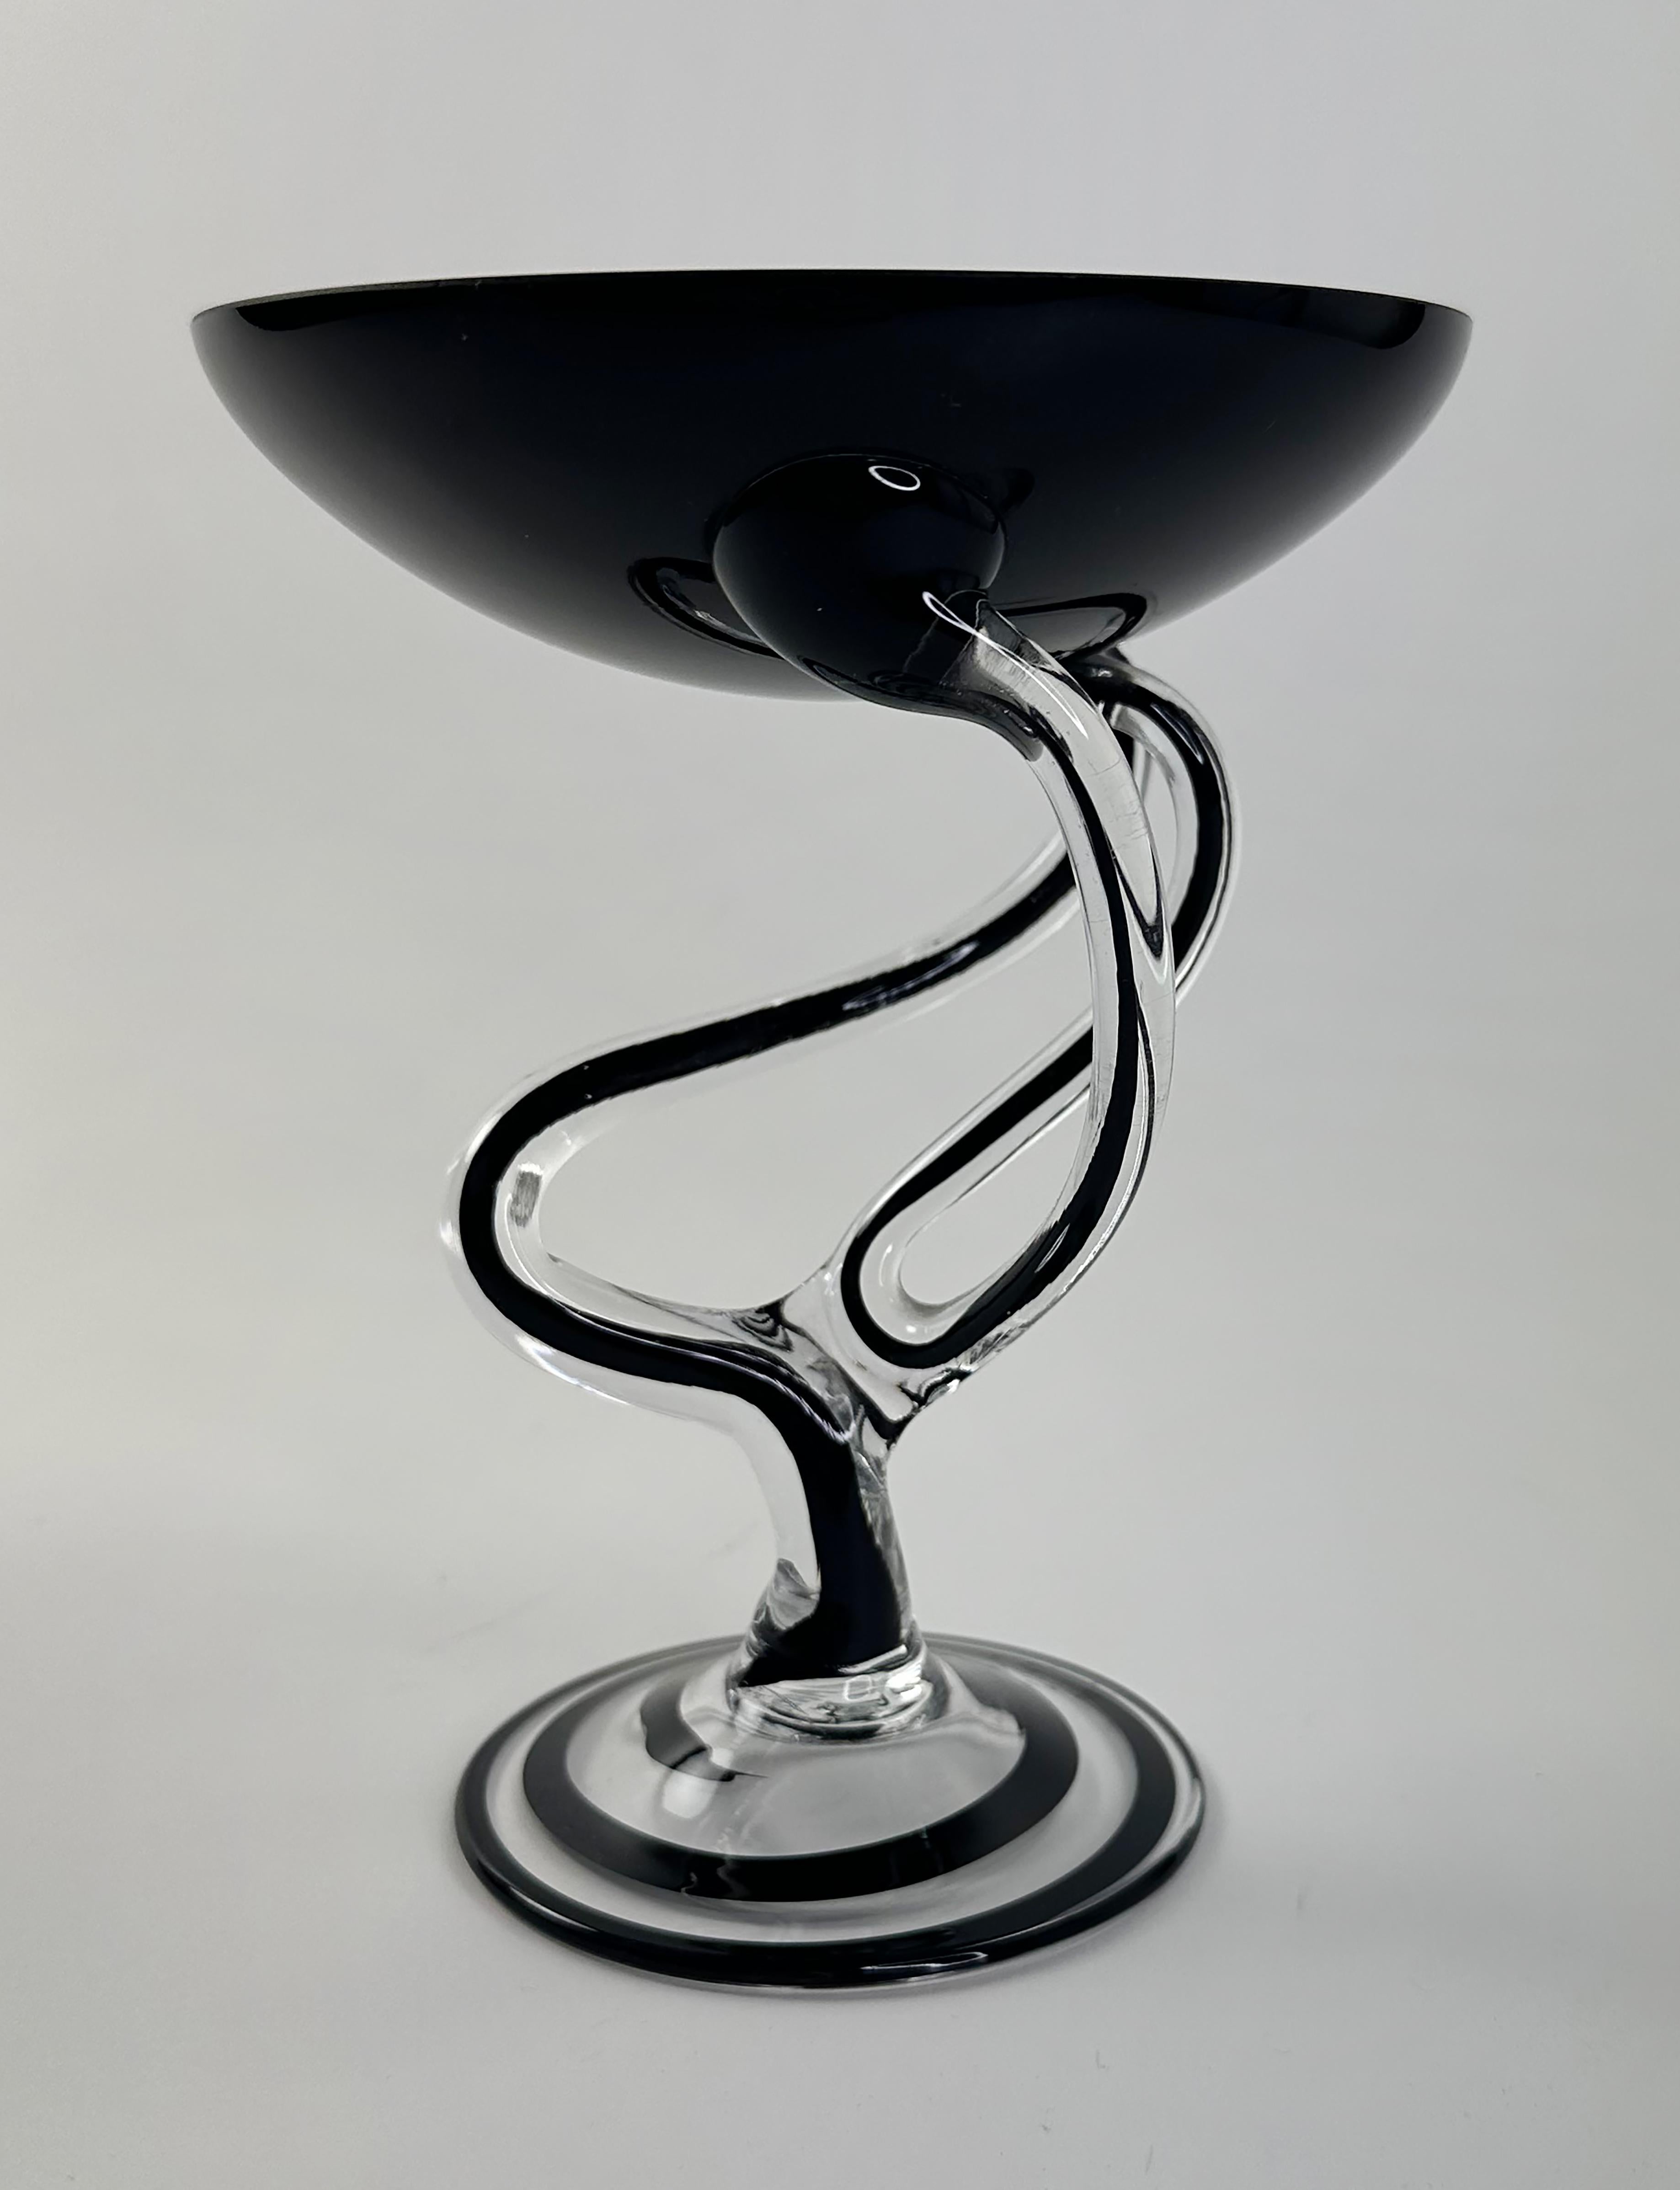 Ein hübsches mundgeblasenes Art-Déco-Glaskompott. Nach dem Vorbild einer skulpturalen Glasschale von Jozefina Krosno. Schwarze und klare Farben. Polnischer Ursprung. Dies ist ähnlich wie bei vielen dieser Arten von Glasskulpturen, da sie in der